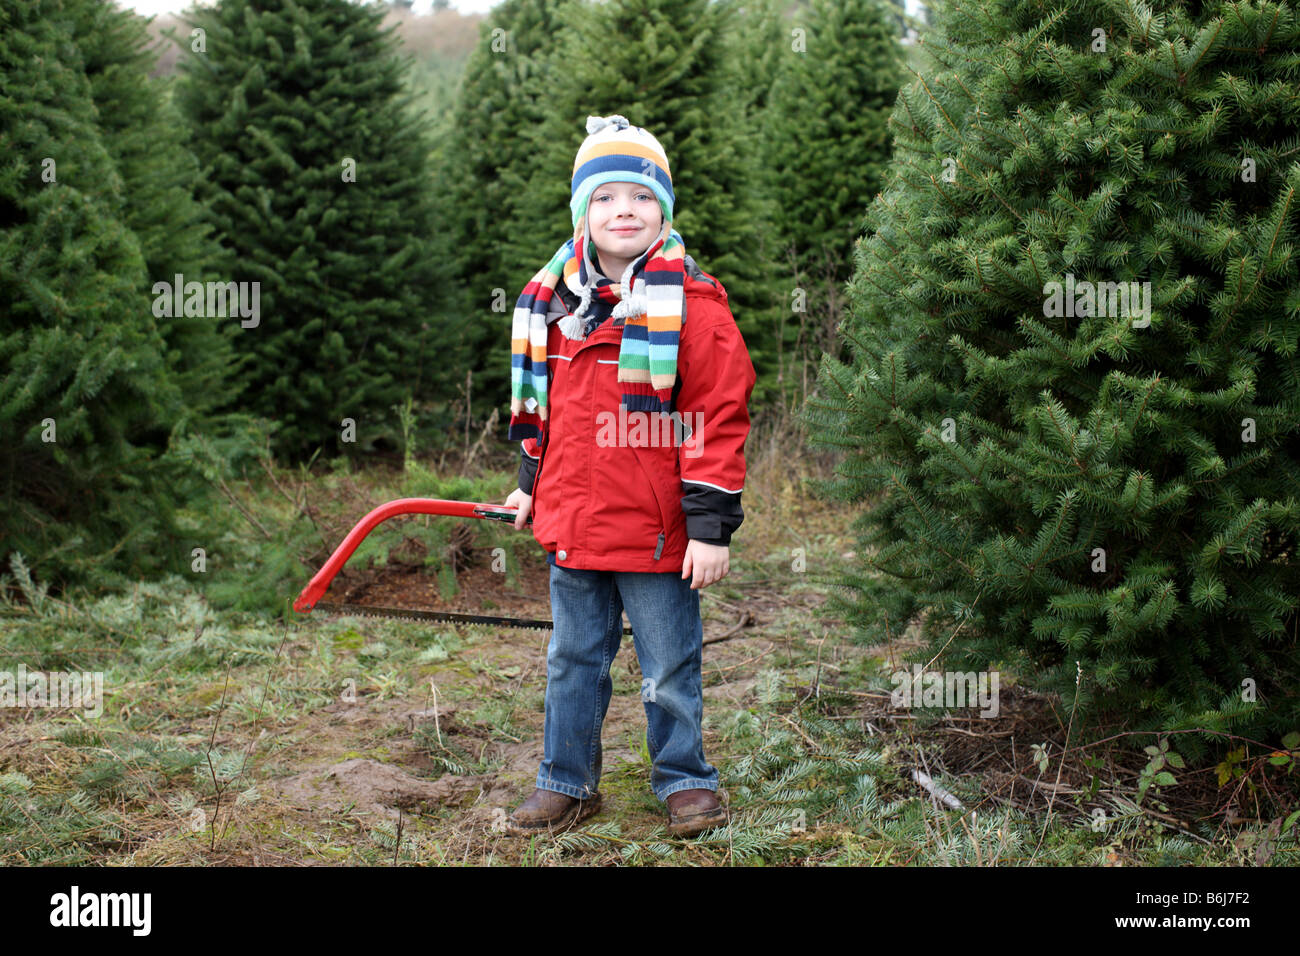 Jeune garçon avec vu sur Christmas Tree Farm Banque D'Images